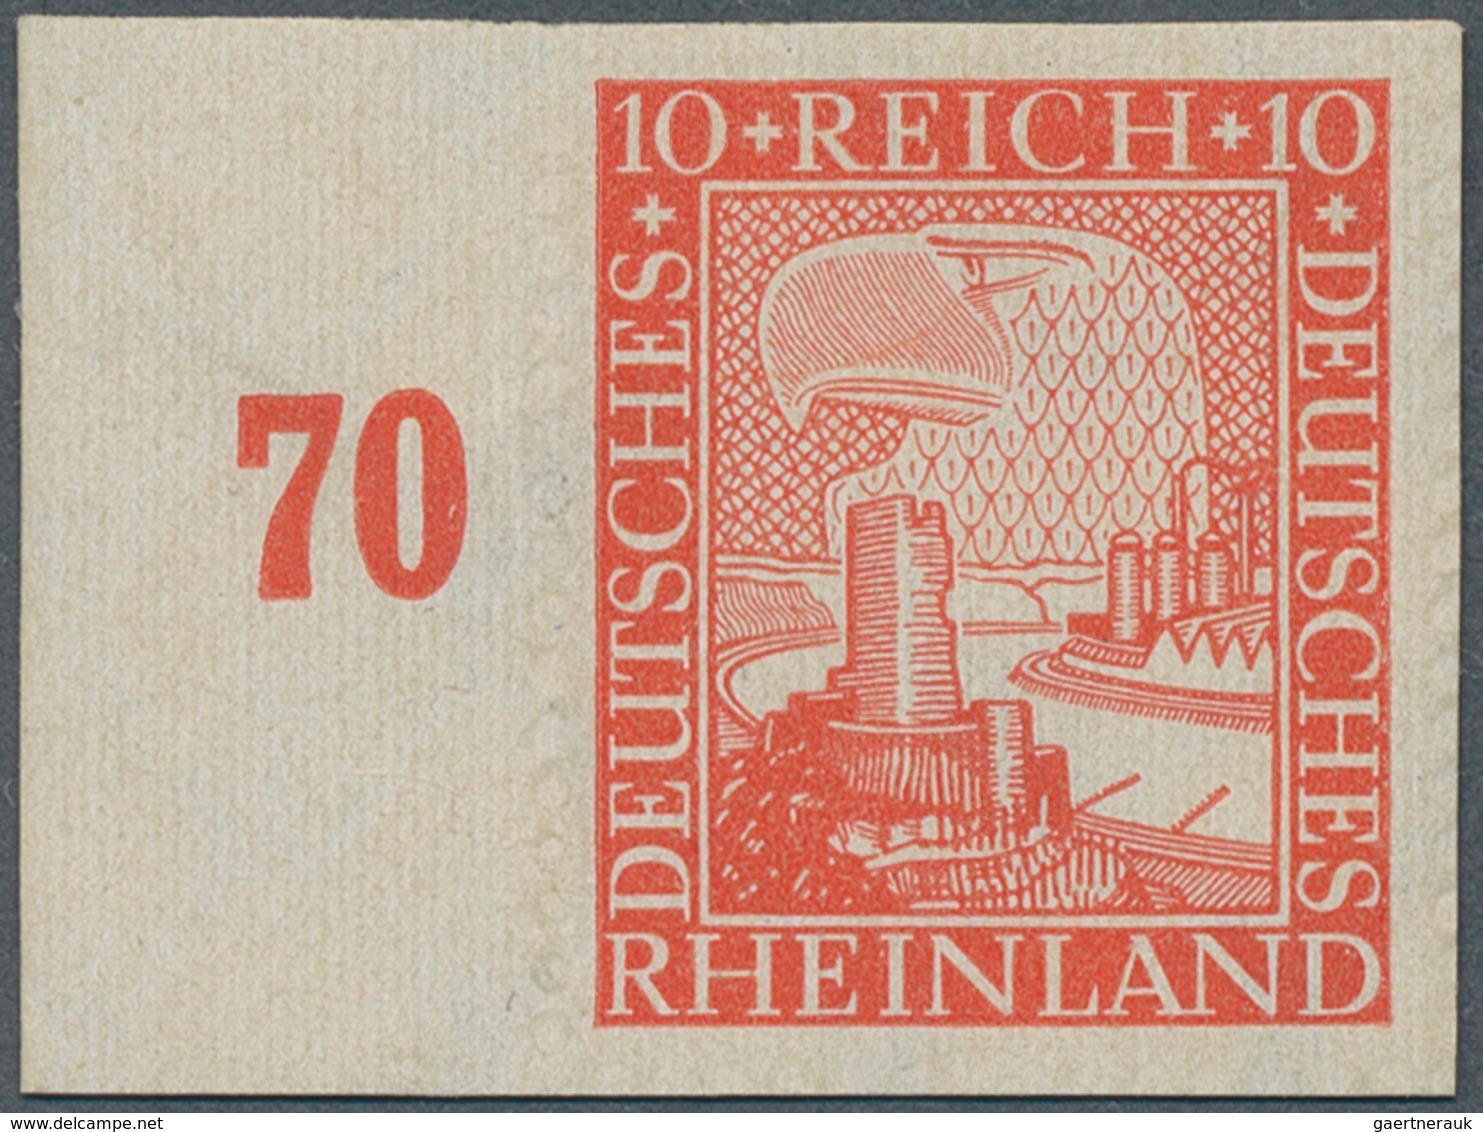 Deutsches Reich - Weimar: 1925, 1000 Jahre Rheinland 10 Pfg. Zinnoberrot, UNGEZÄHNT Vom Linken Seite - Neufs